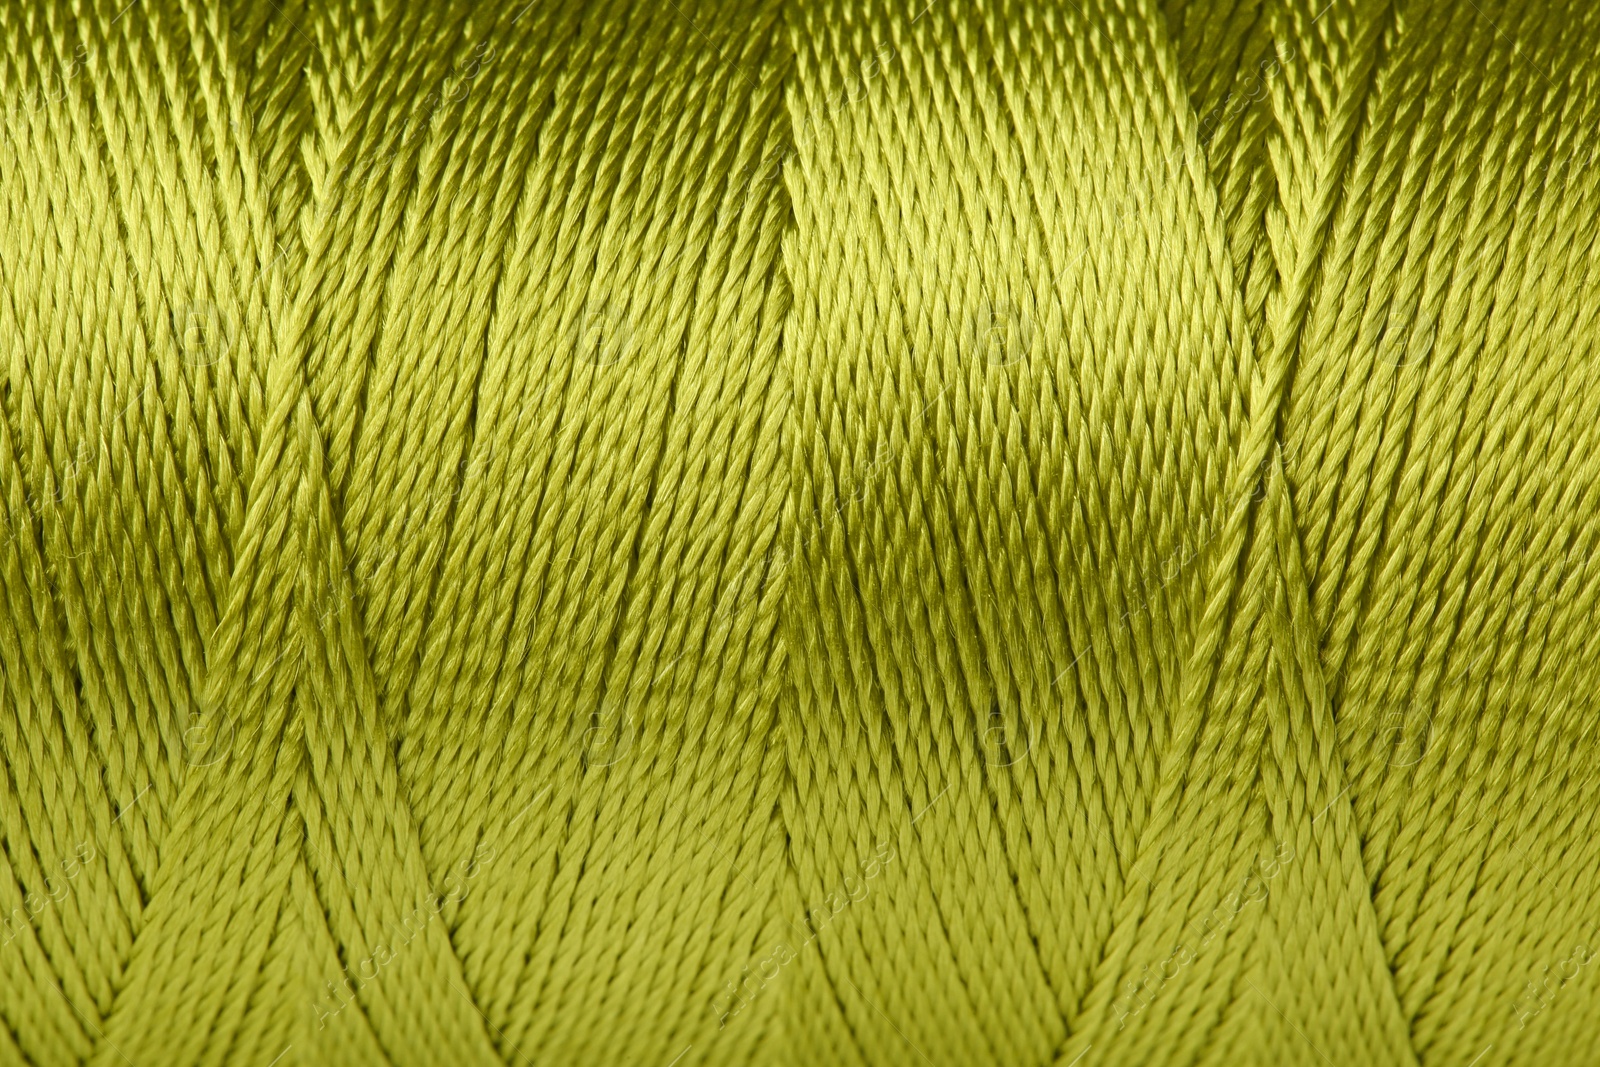 Photo of Color thread spool, closeup